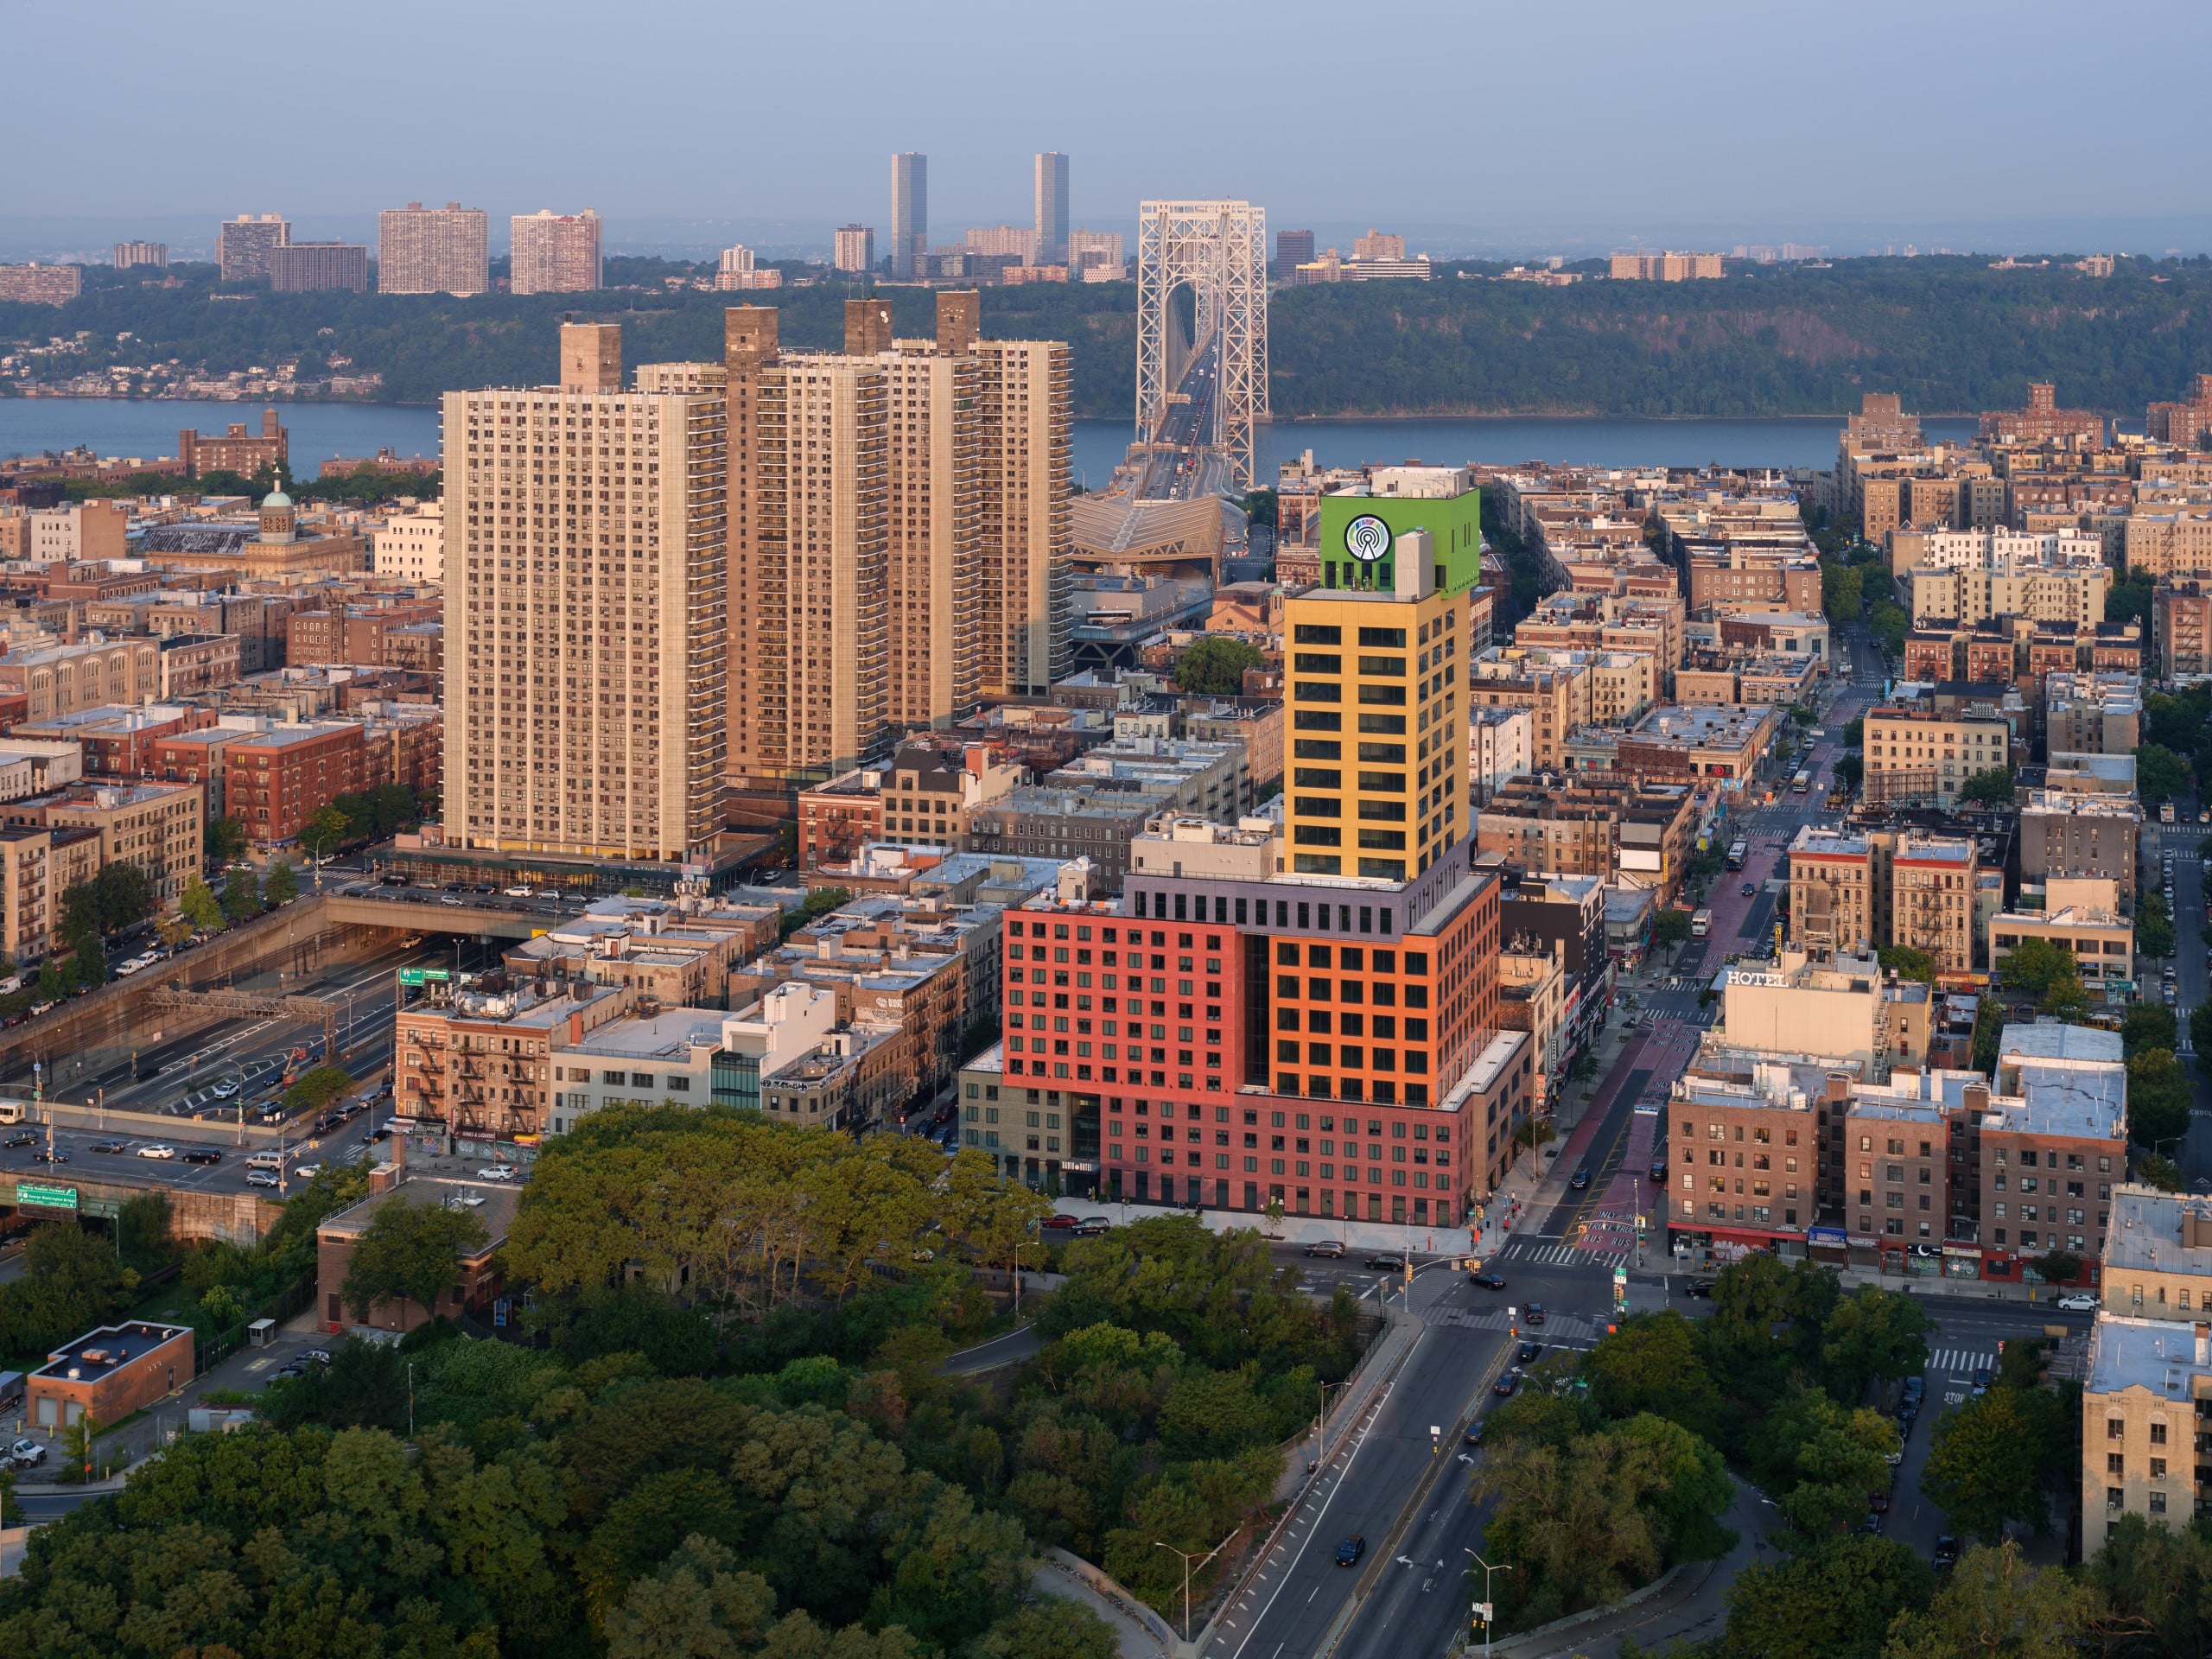 Das MVRDV Radio Hotel and Tower fügt sich in die Skyline von Upper Manhattan ein. © Ossip van Duivenbode